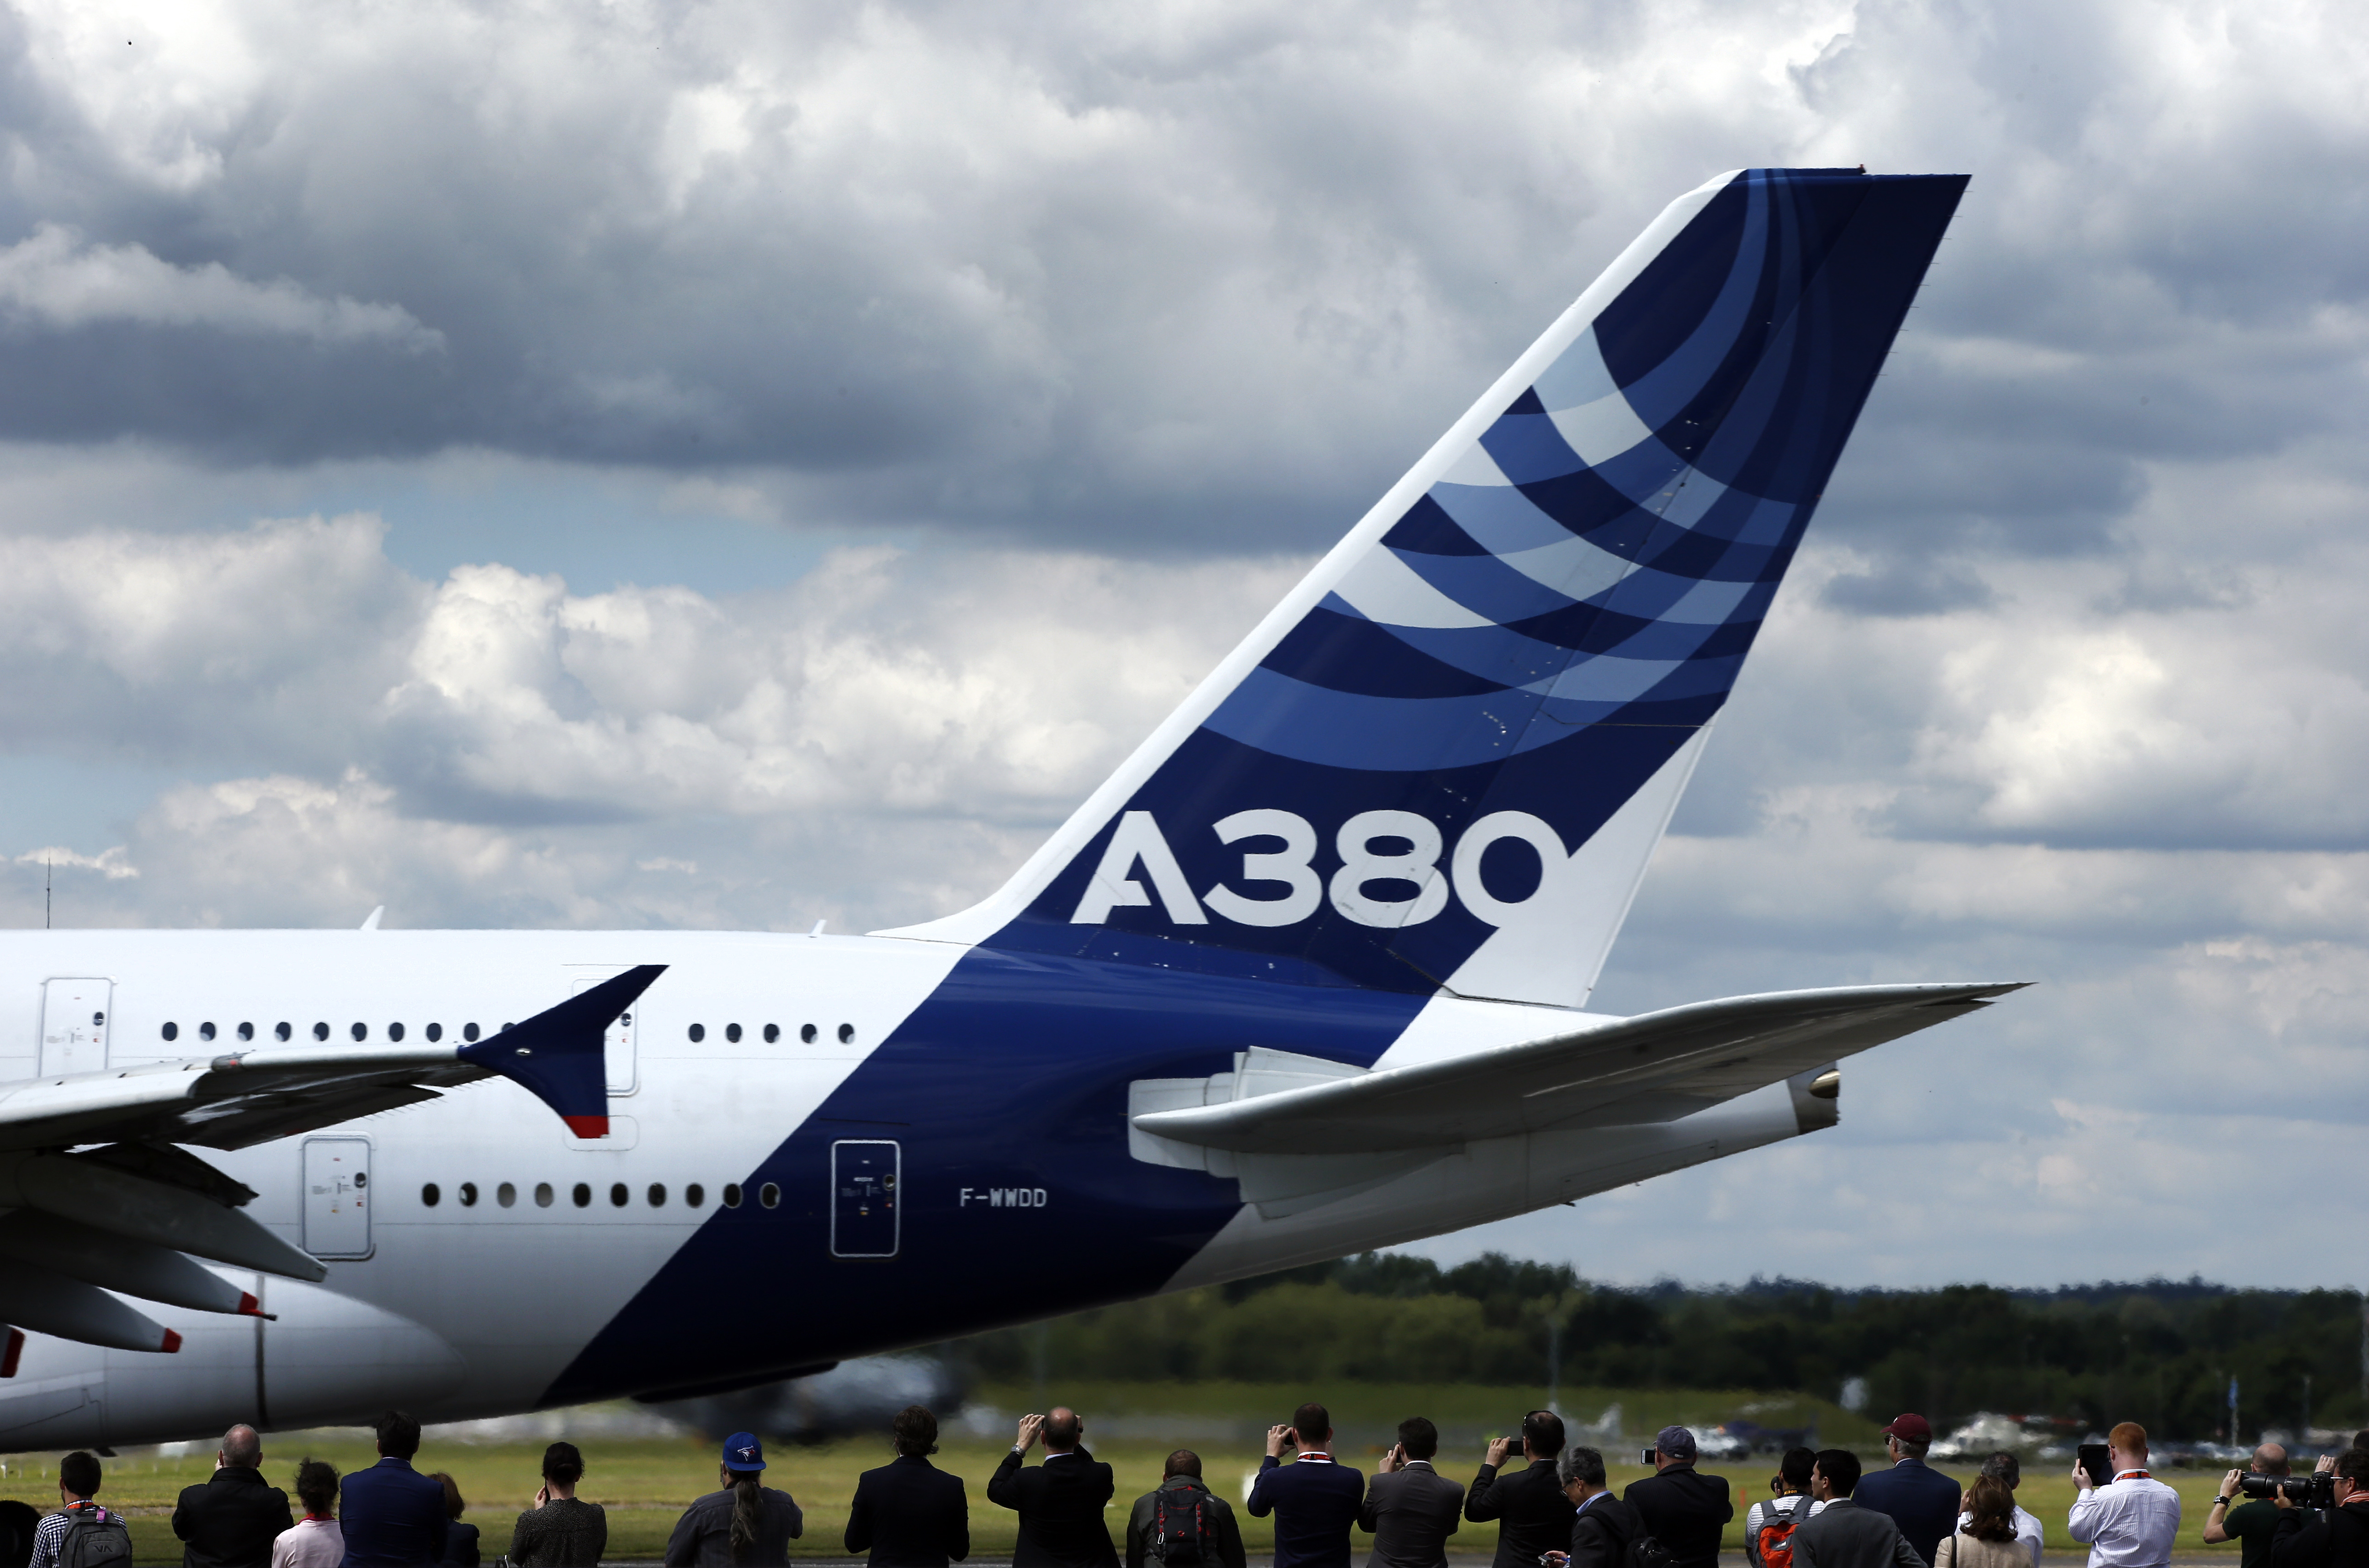 Repedésveszély miatt figyelmeztetést adtak ki a legrégebbi Airbus A380-asokra